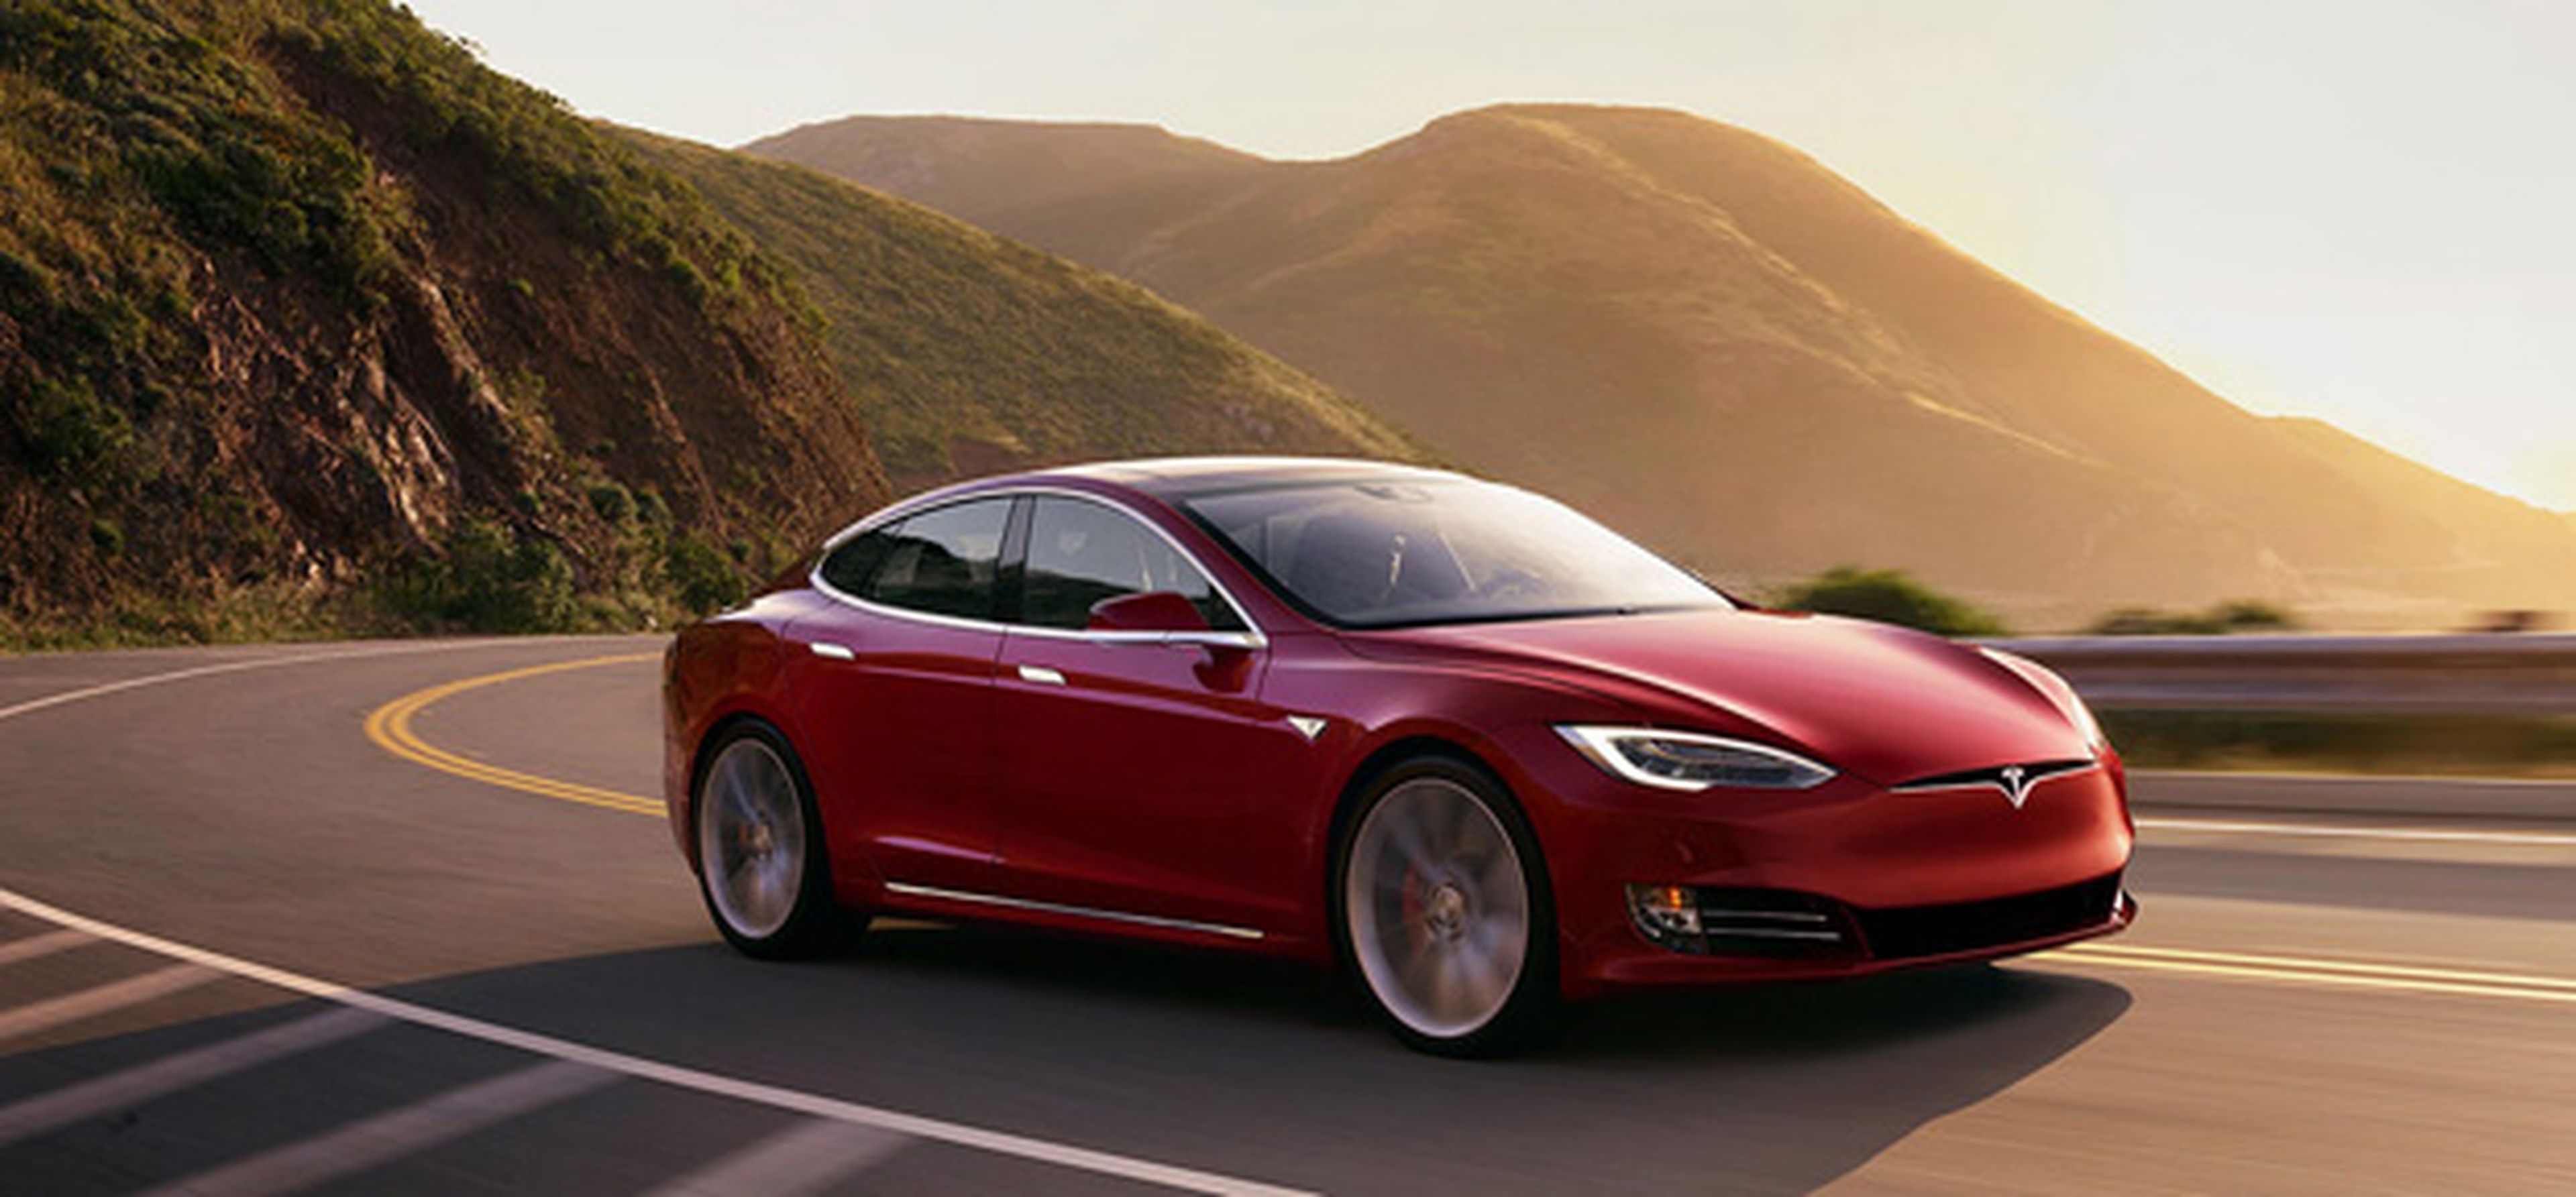 El Model S fue el segundo coche eléctrico de Tesla, y llegó en el año 2008